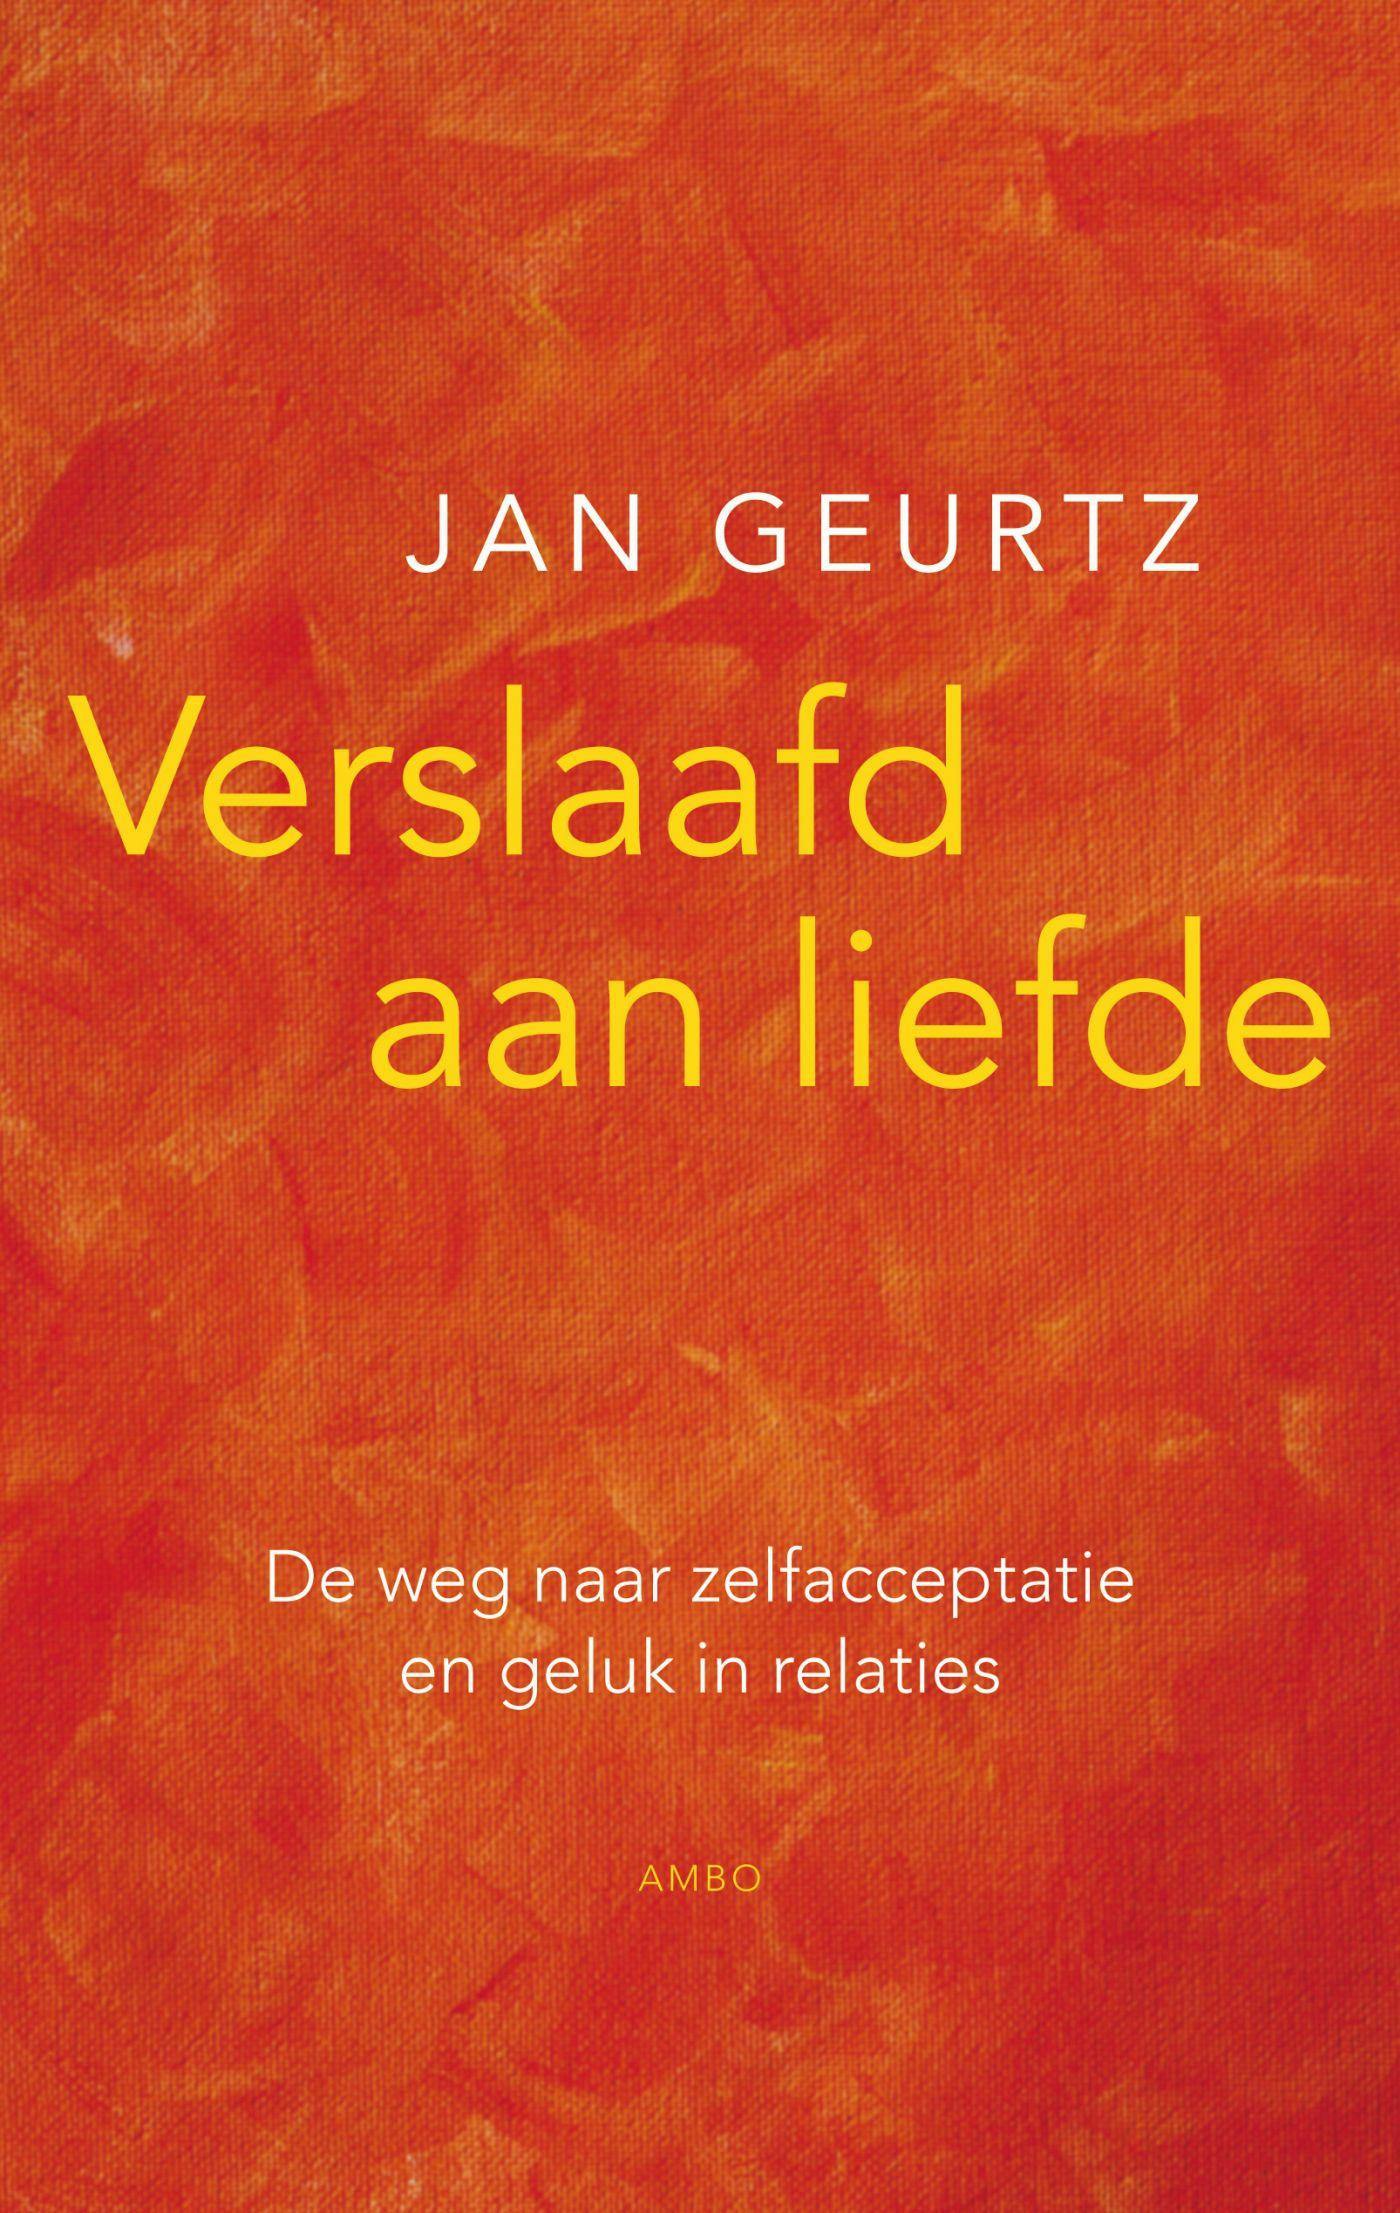 Verslaafd aan liefde: de weg naar zelfacceptatie en geluk in relaties - Jan Geurtz